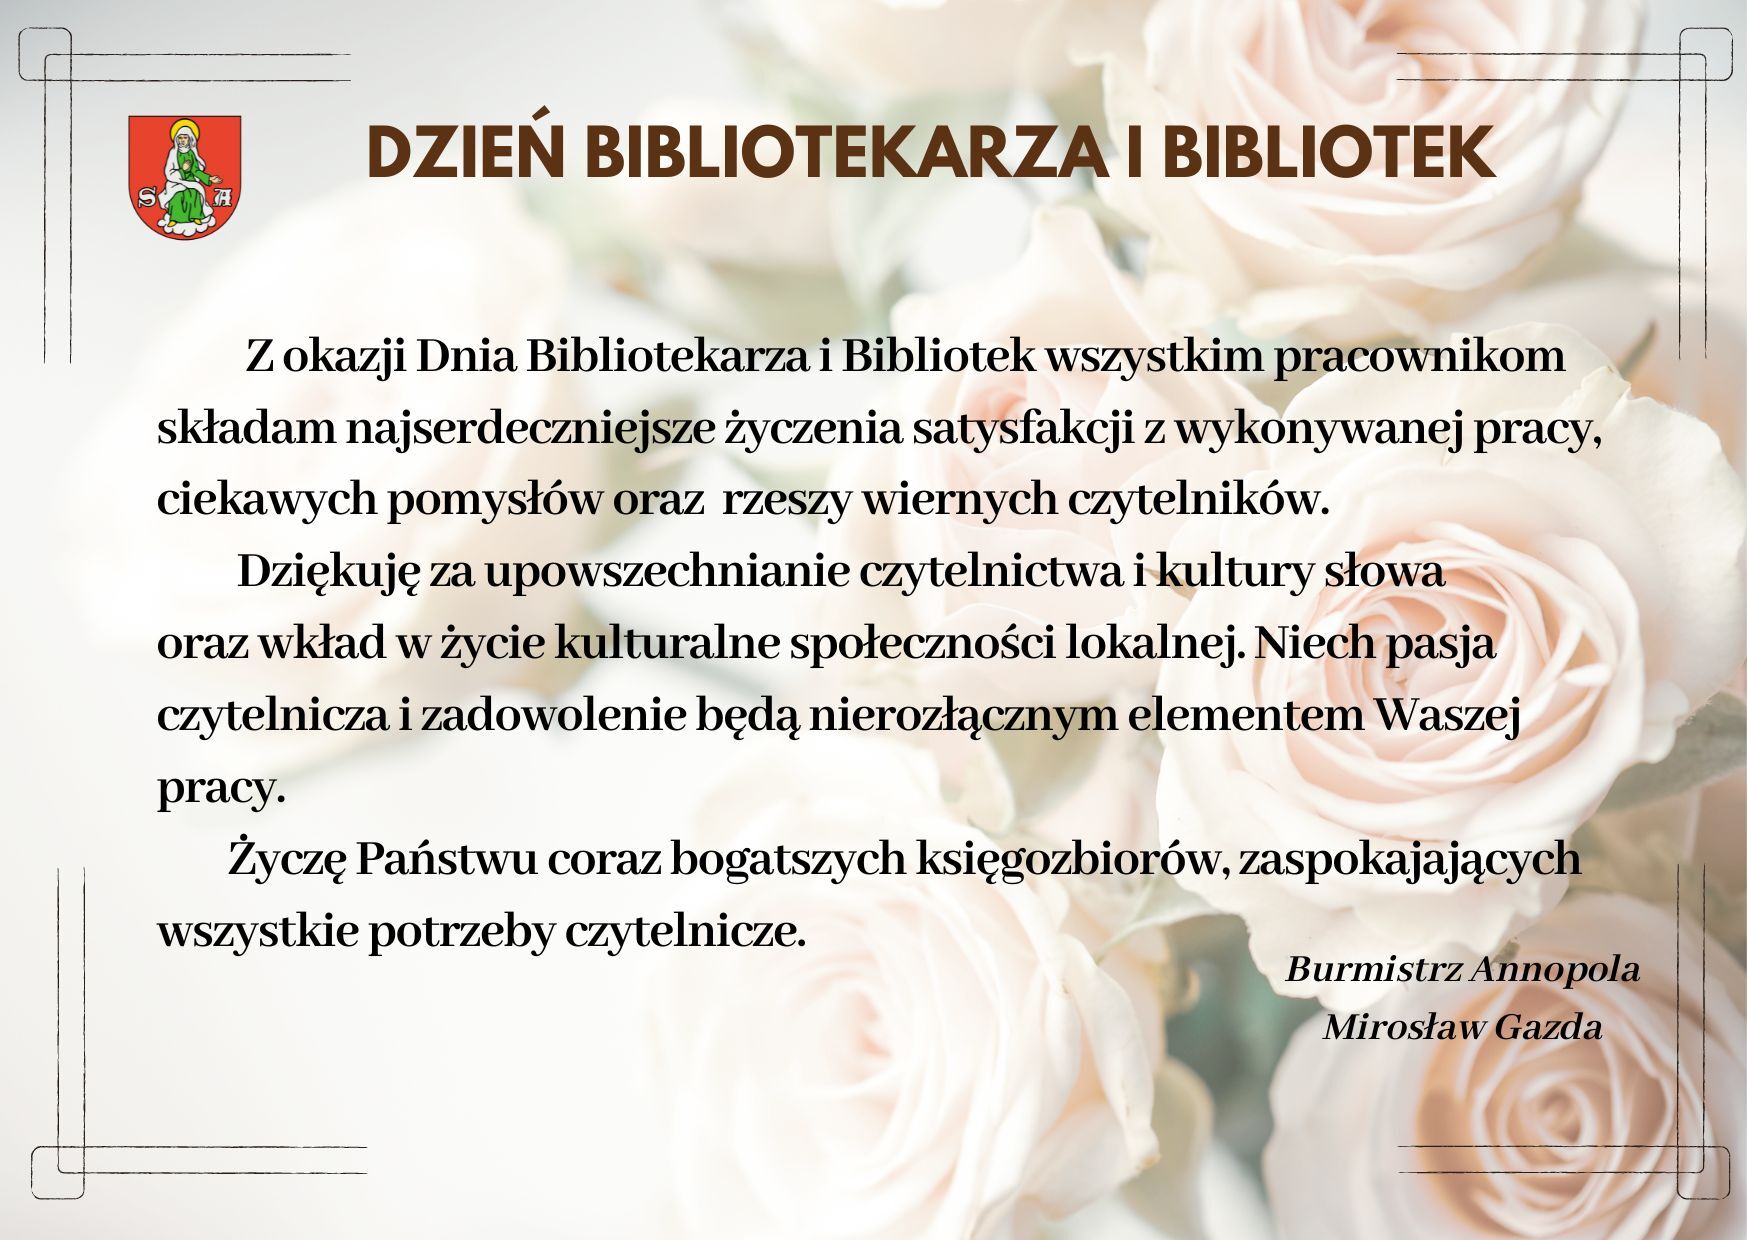 Zdjęcie przedstawia plakat okolicznościowy z okazji Dnia Bibliotekarza i Bibliotek z tekstem w języku polskim, zawierający herb i życzenia dla pracowników.